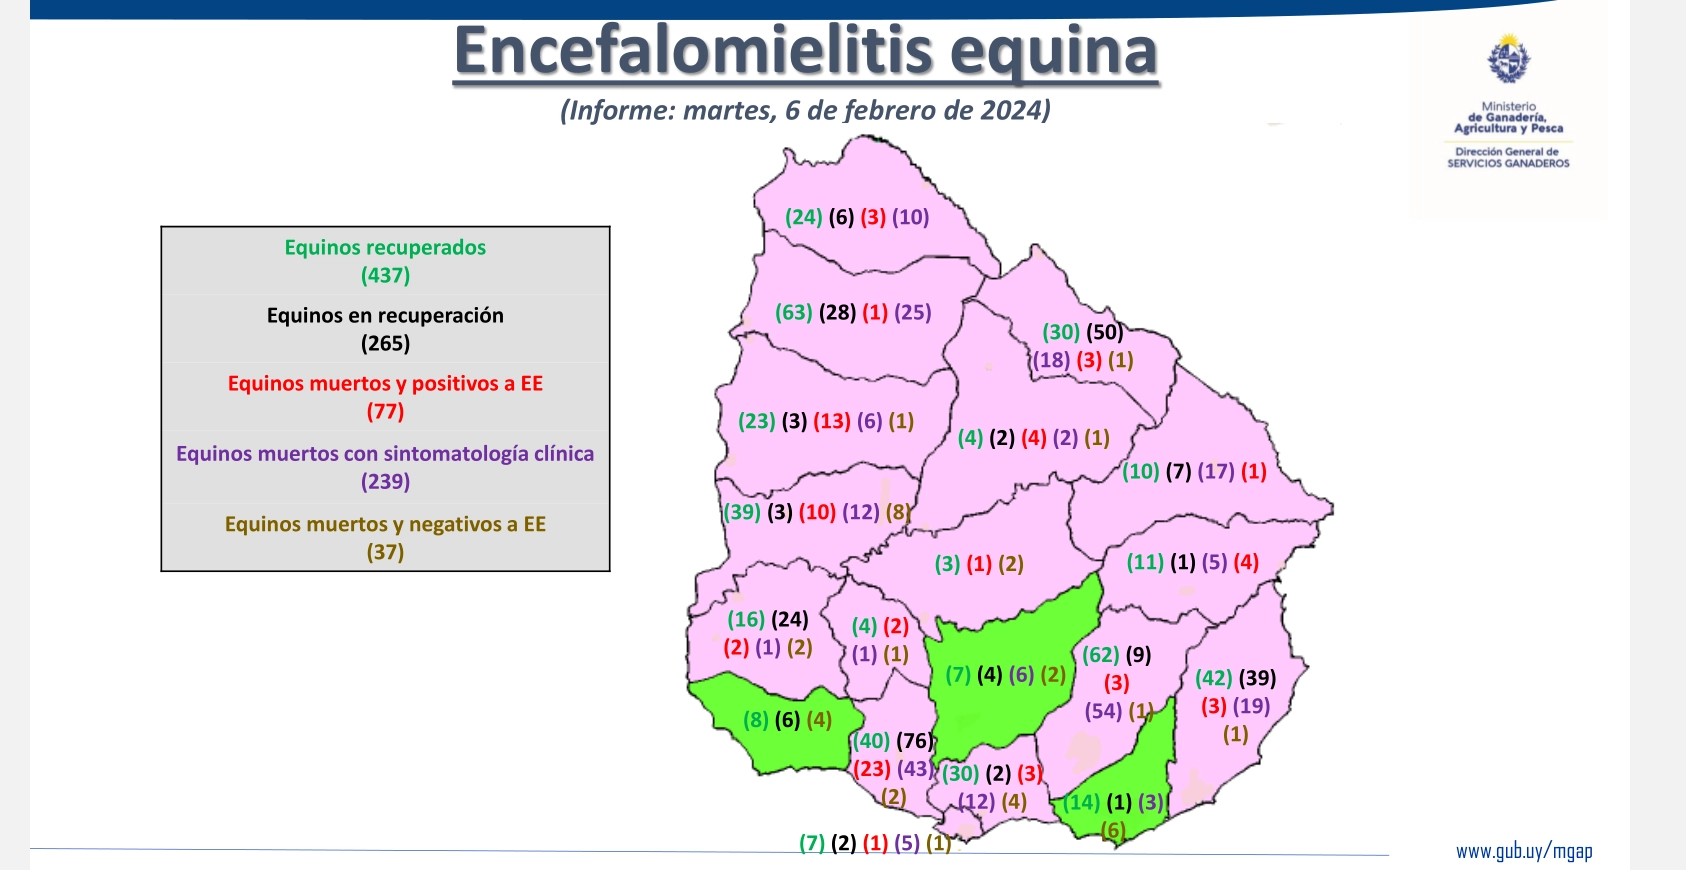 Distribución de los casos de encefalomielitis equina en Uruguay. Febrero 2024.